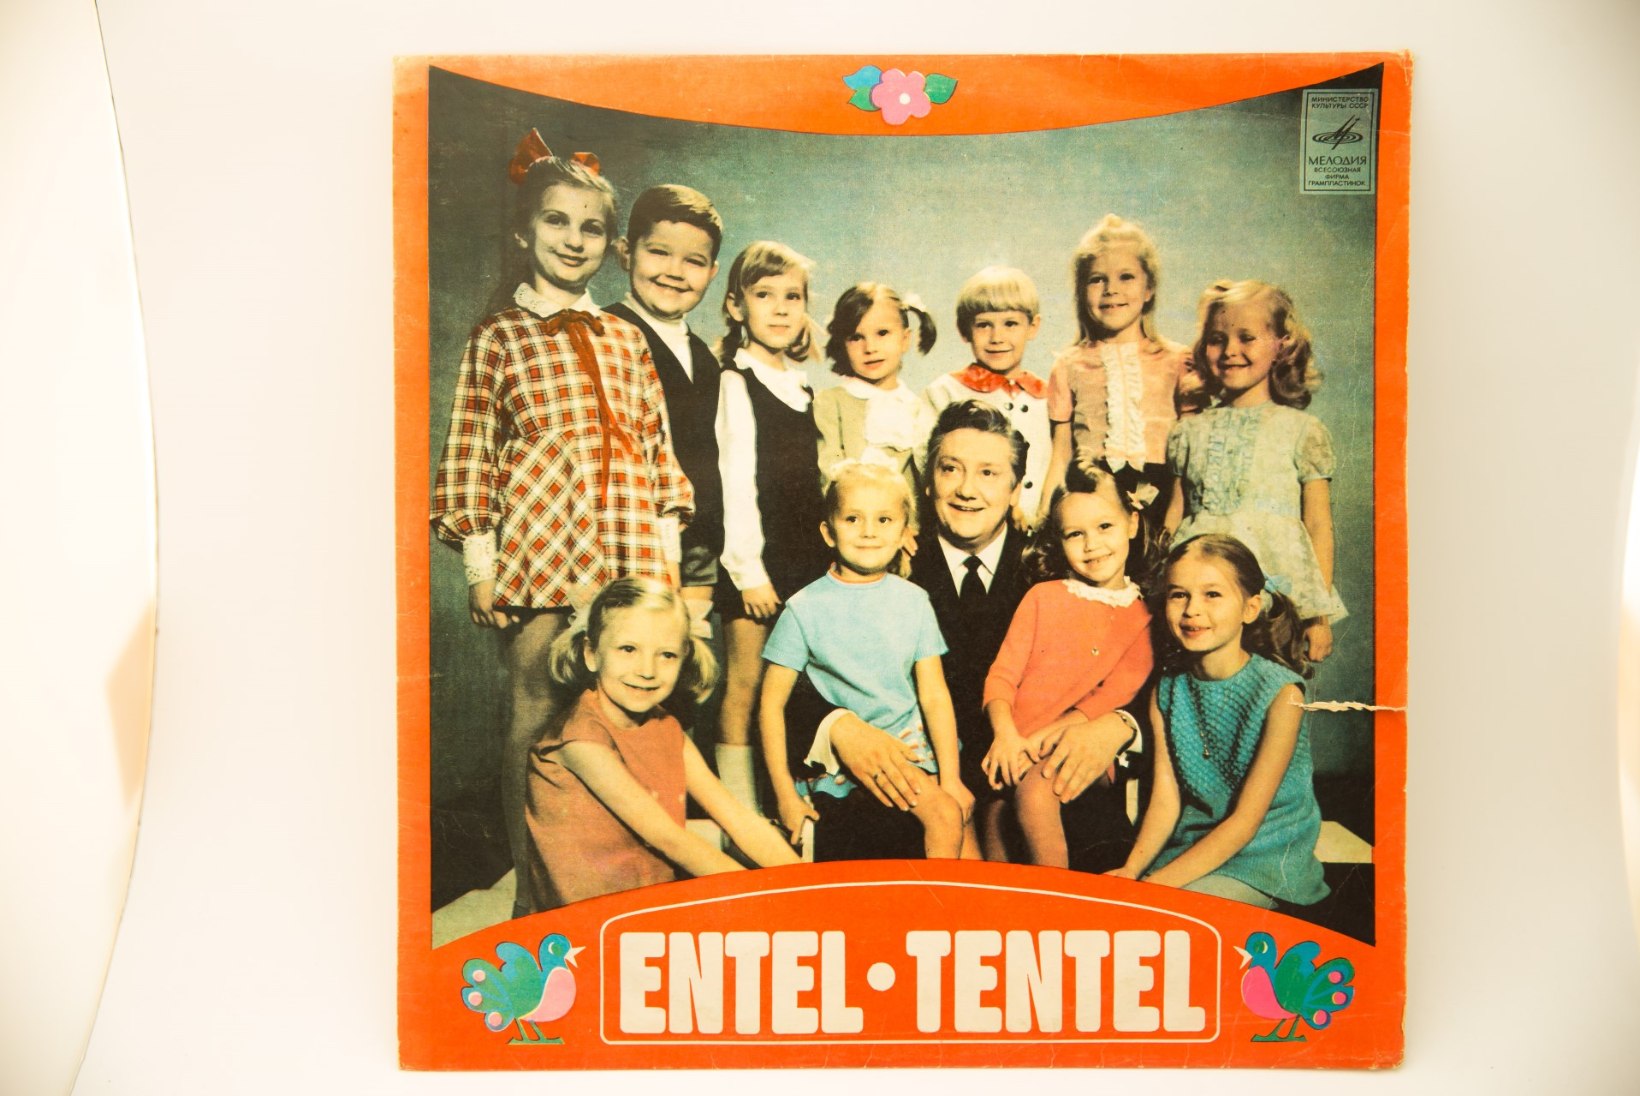 „Entel-tentelis“ laulnud Jan Roosaar: „Põdra maja“ ma oma lastelastele ei laula